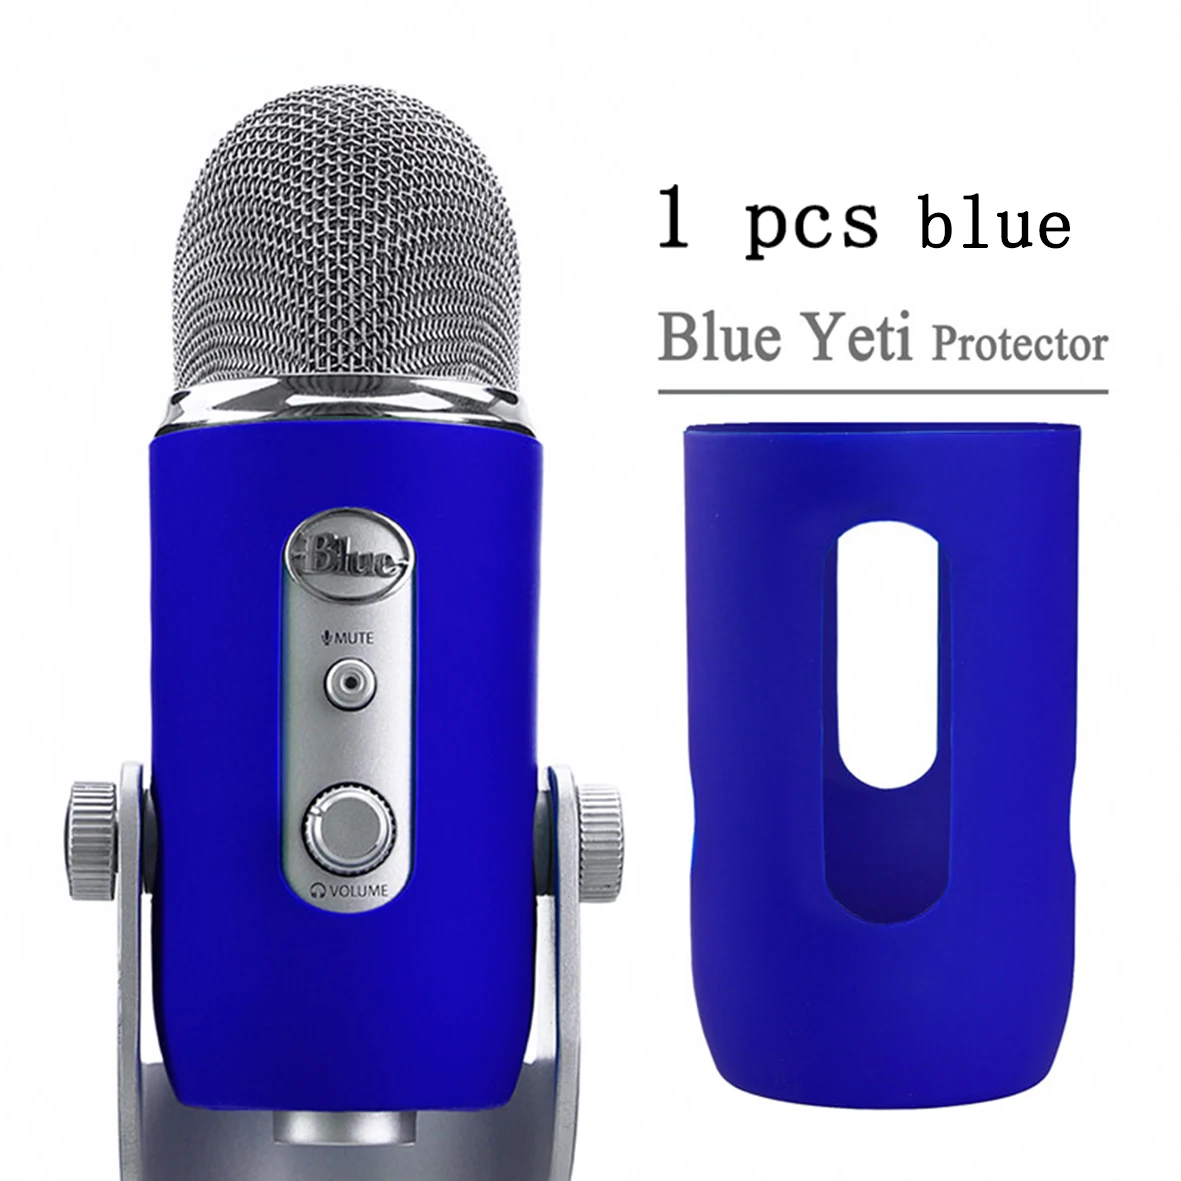 Кремнезем защитный гель пылезащитный пенный(мягкий) Микрофон ветрового стекла для Blue Yeti, Yeti Pro конденсаторный микрофоны Поп фильтр Губка крышка - Цвет: pink